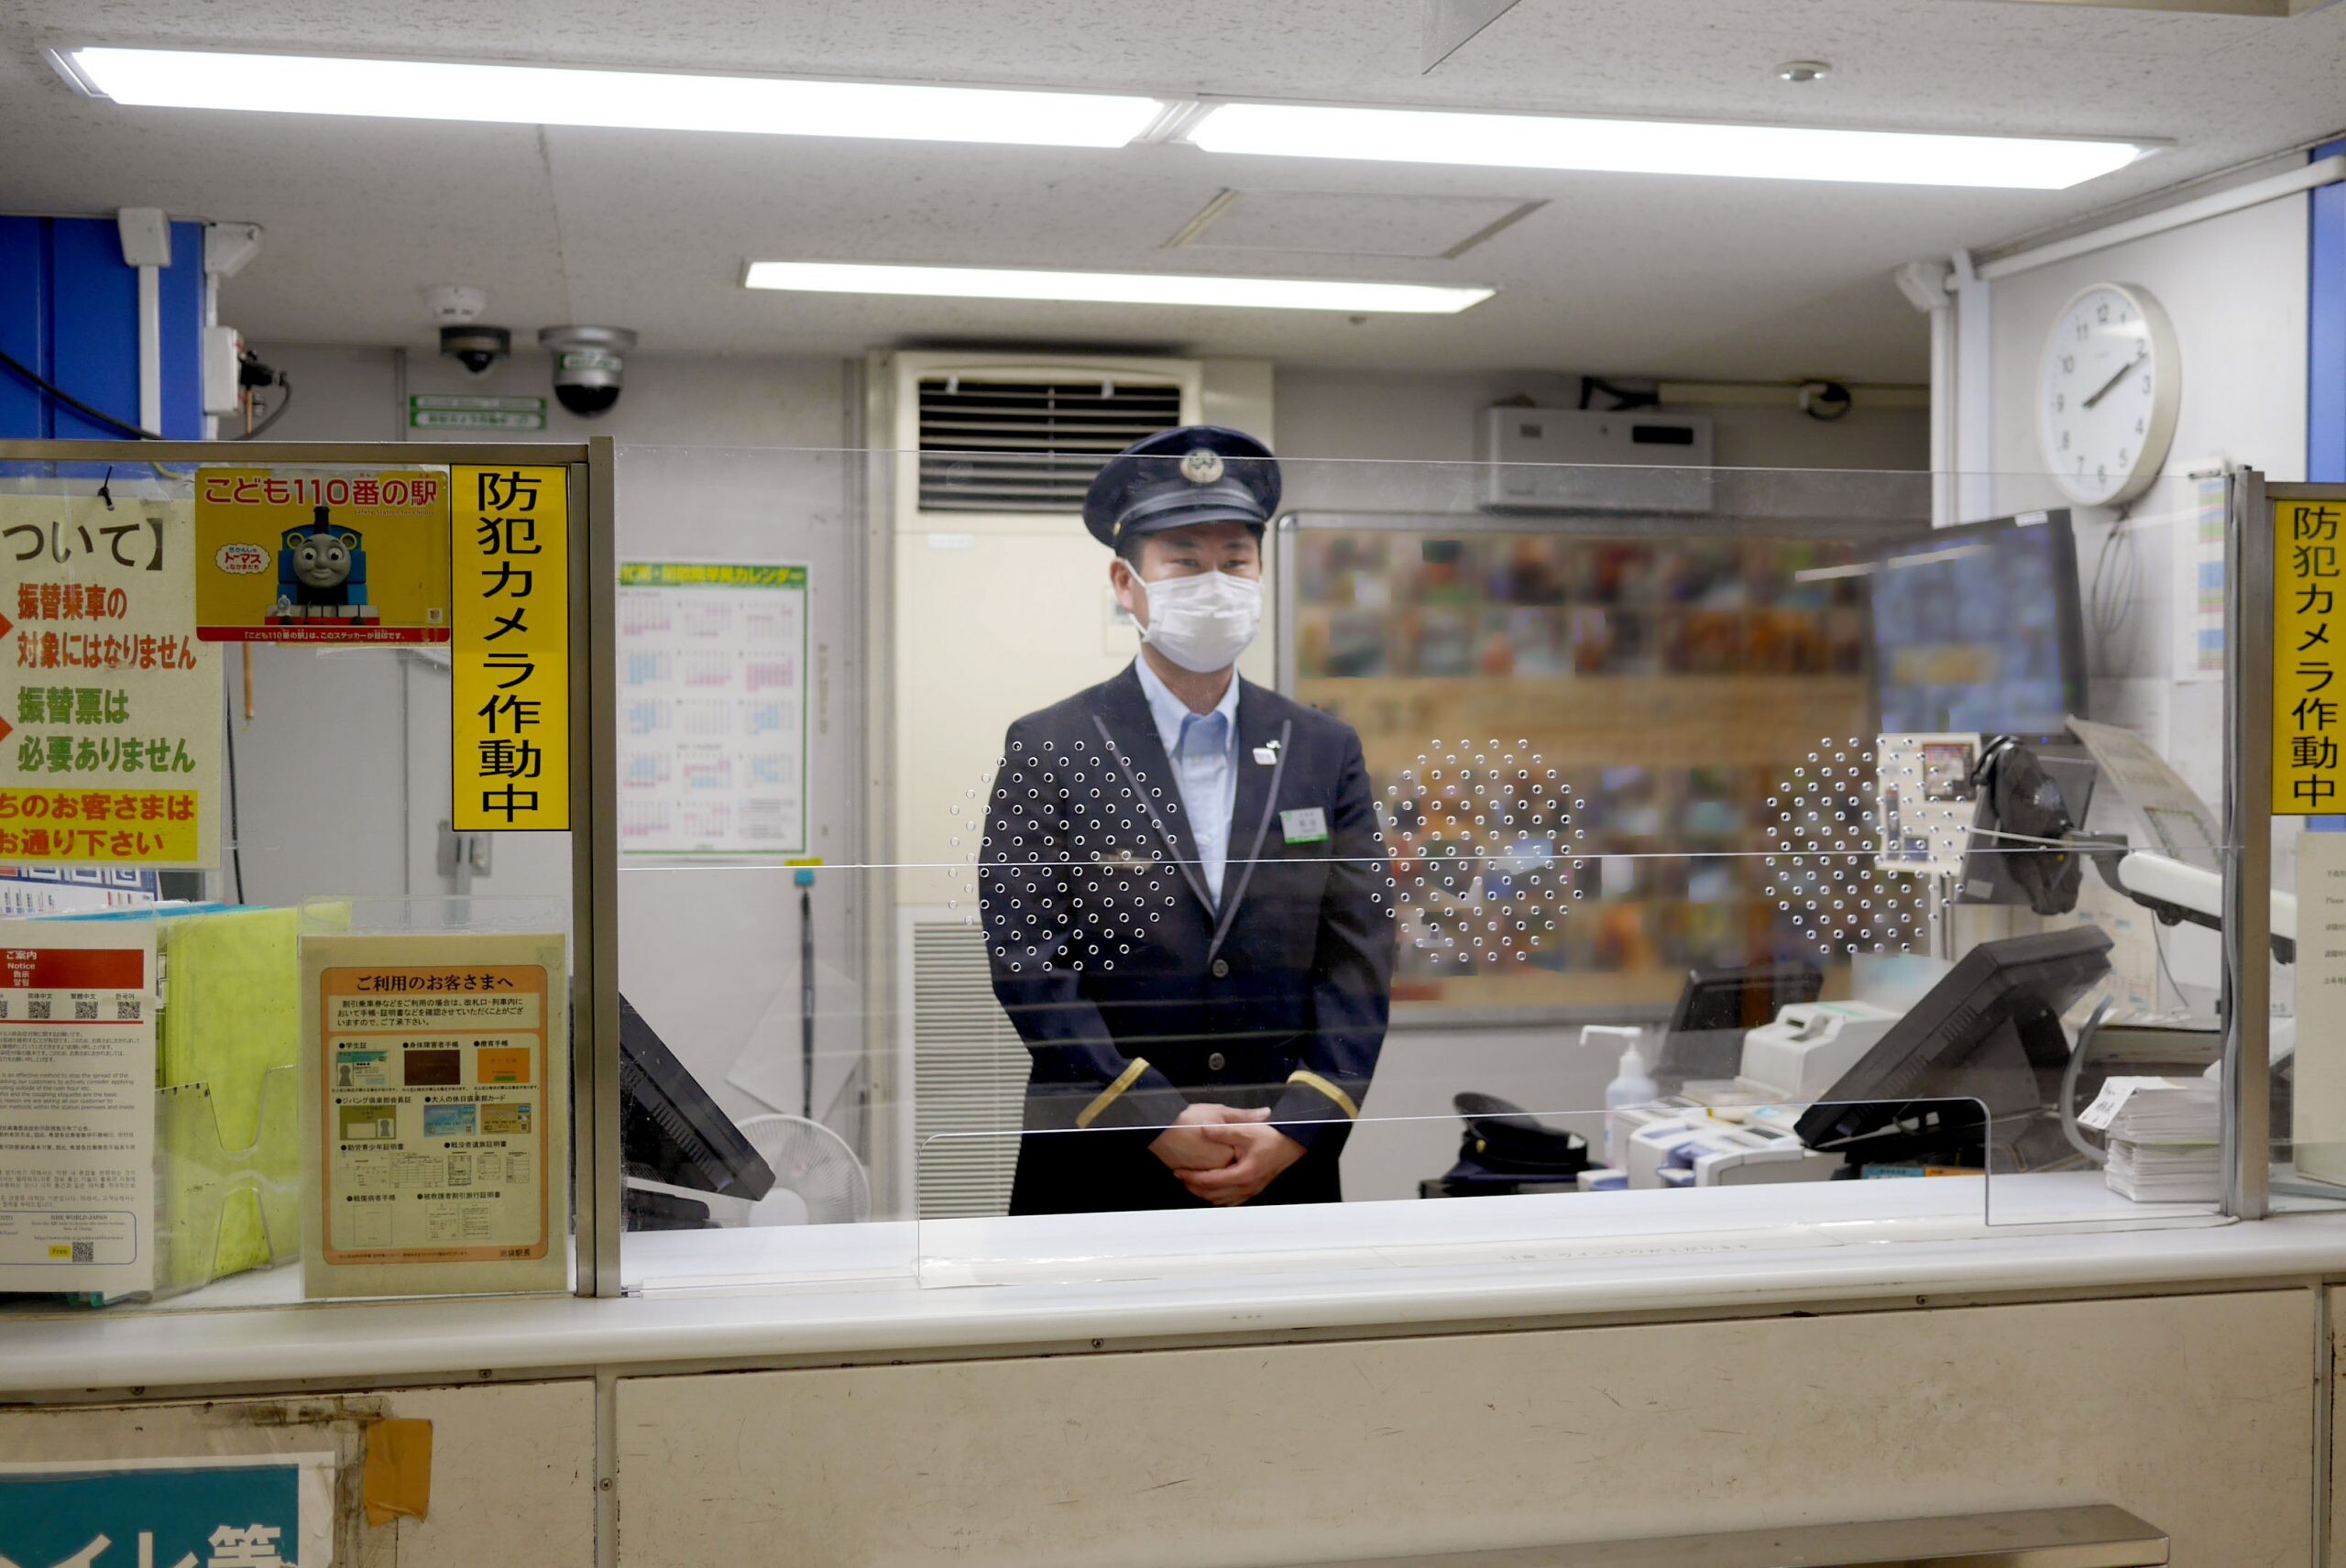 เที่ยวญี่ปุ่นได้อย่างปลอดภัยและสบายใจด้วยมาตรการรับมือกับไวรัสโควิด 19 ตามมาตรฐาน JR EAST